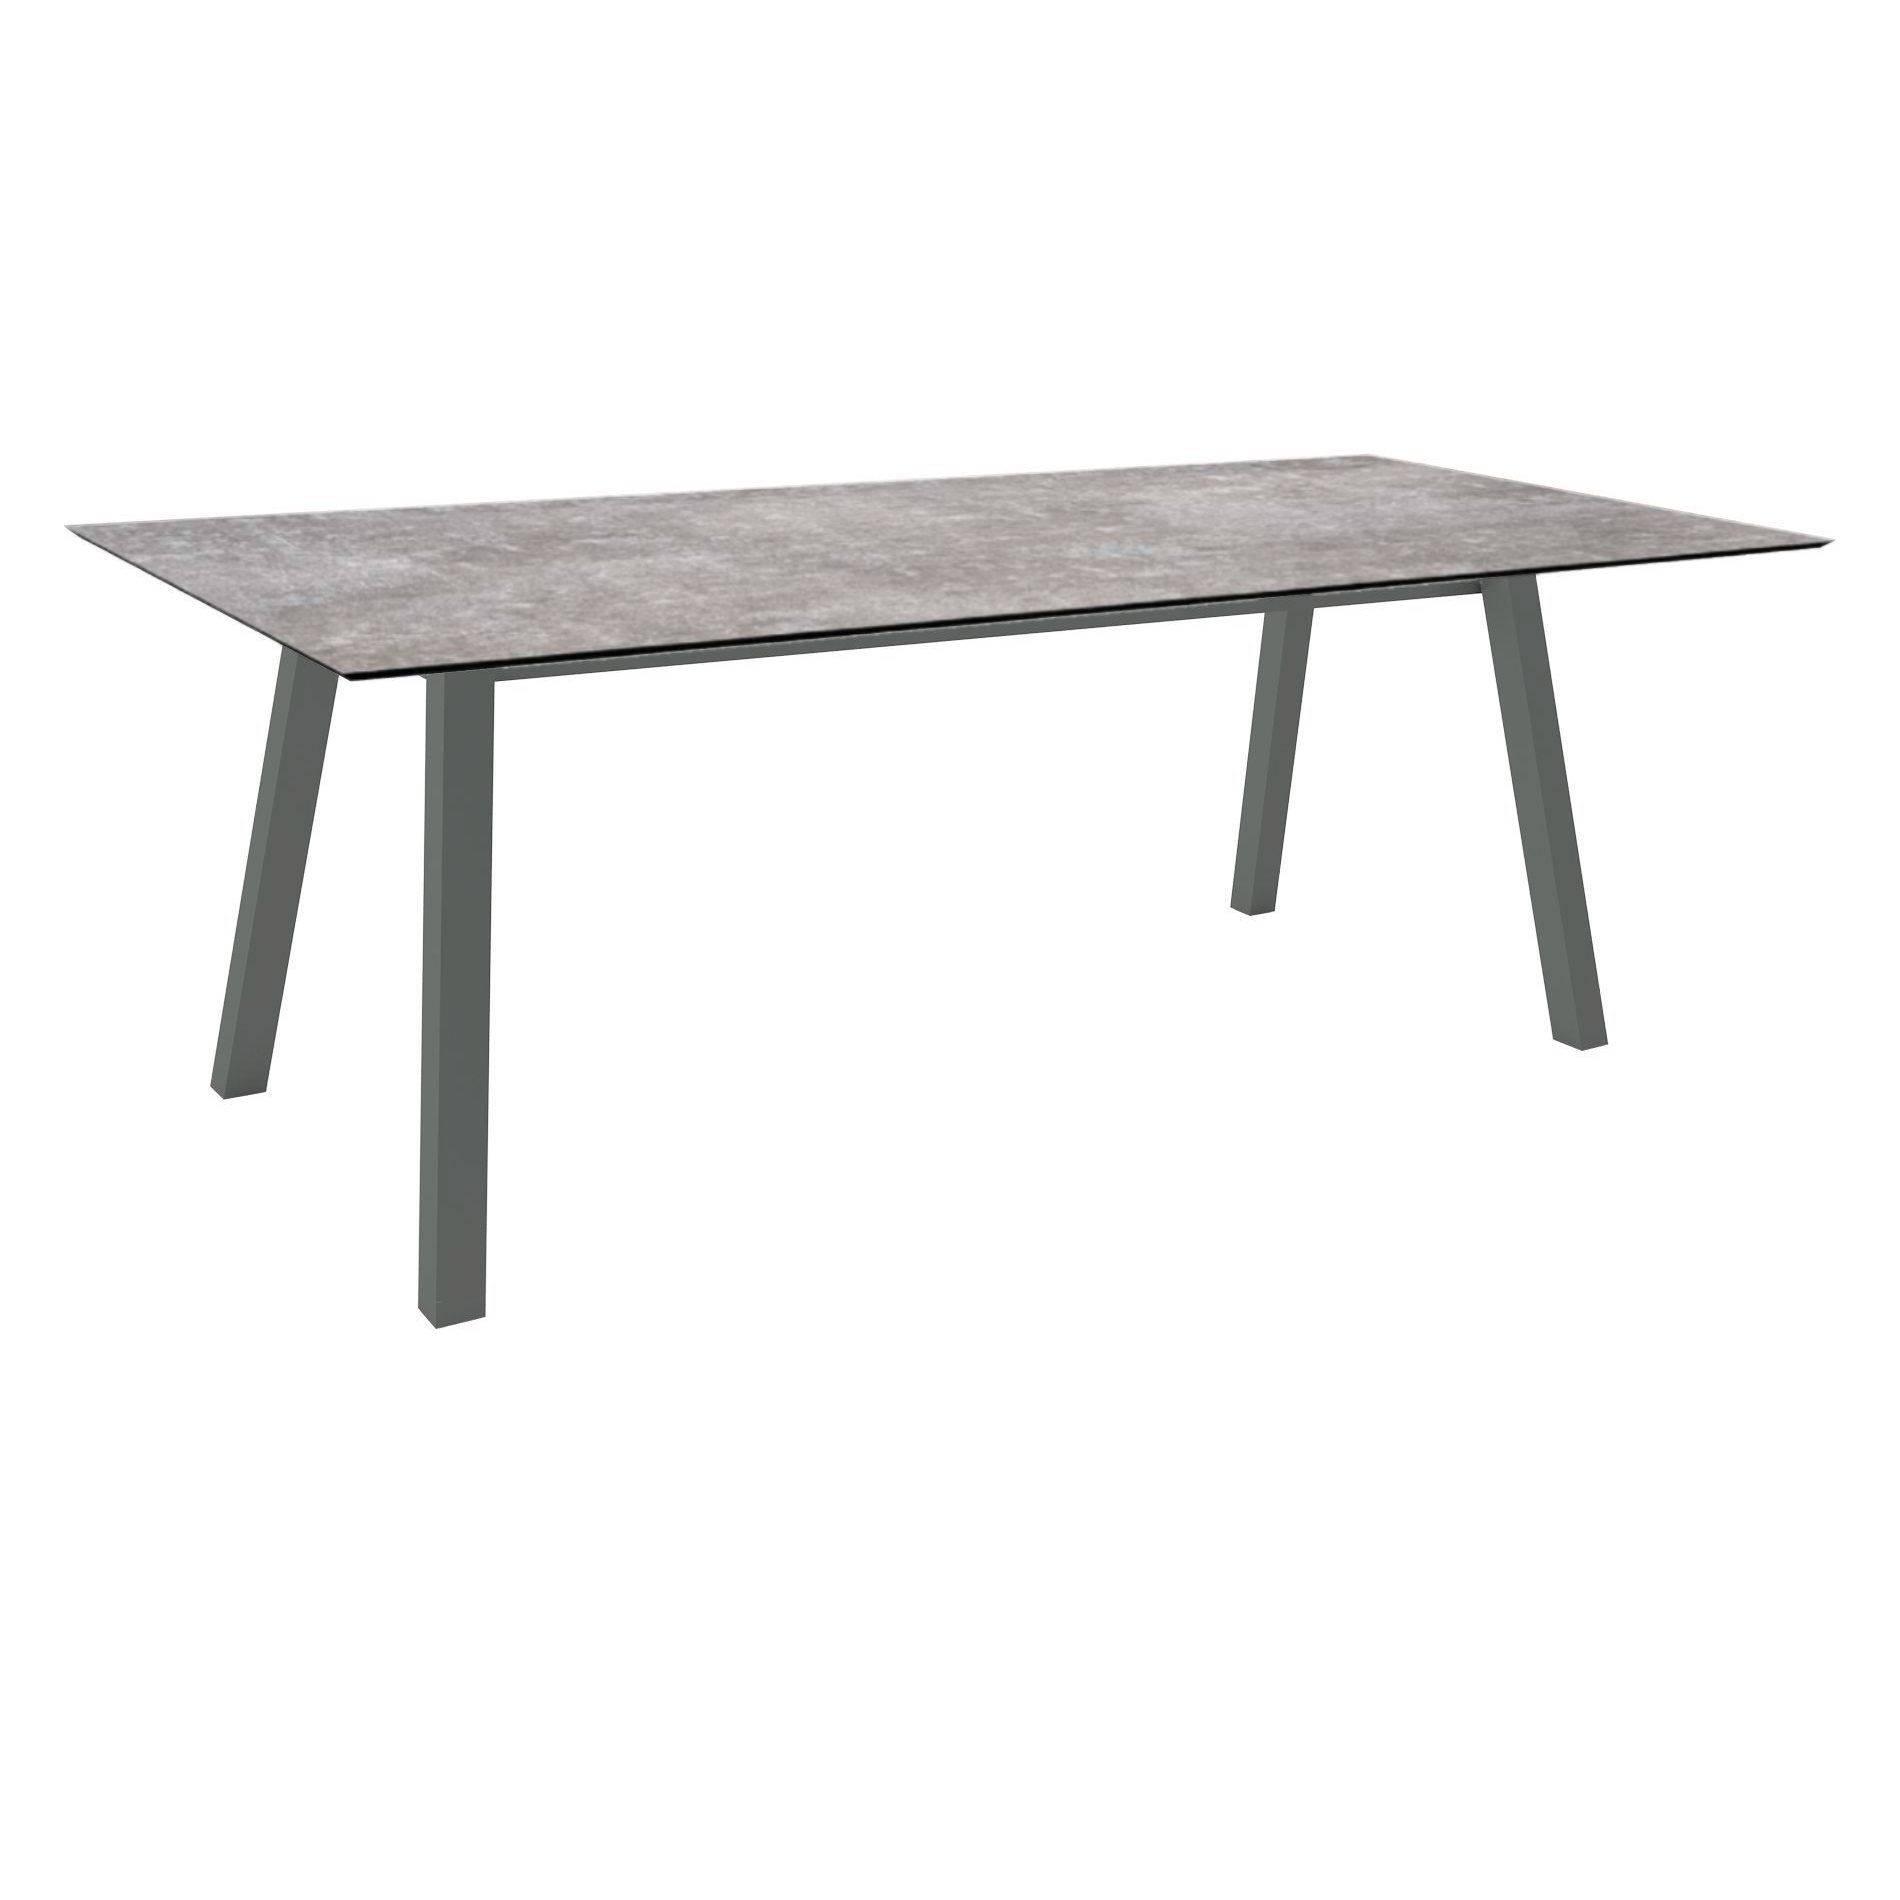 Stern Tisch "Interno", Größe 220x100cm, Alu anthrazit, Vierkantrohr, Tischplatte HPL Metallic Grau